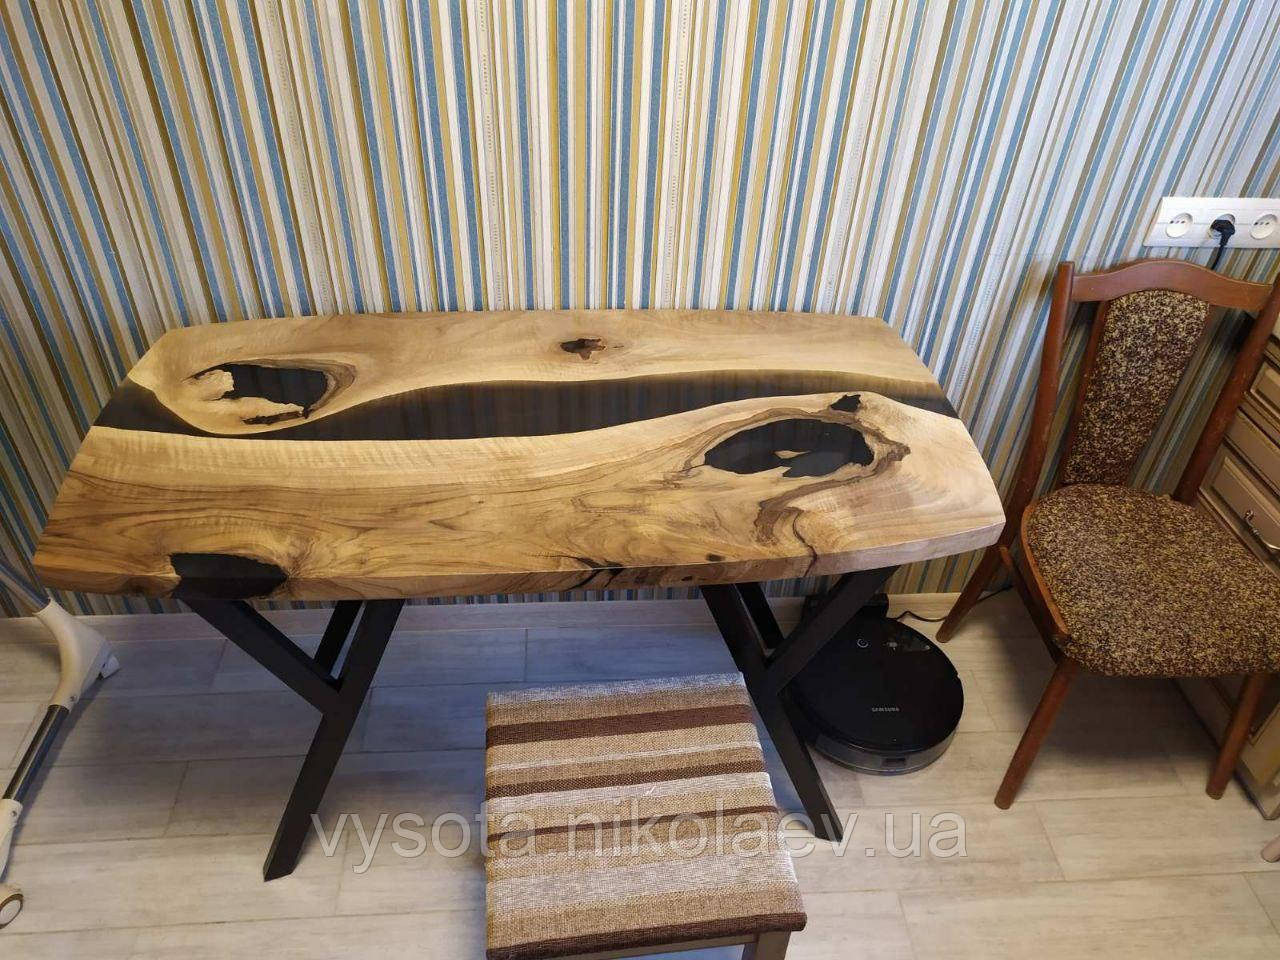 Класичний кухонний стіл з Горіха з елементами декору епоксидниї смоли.